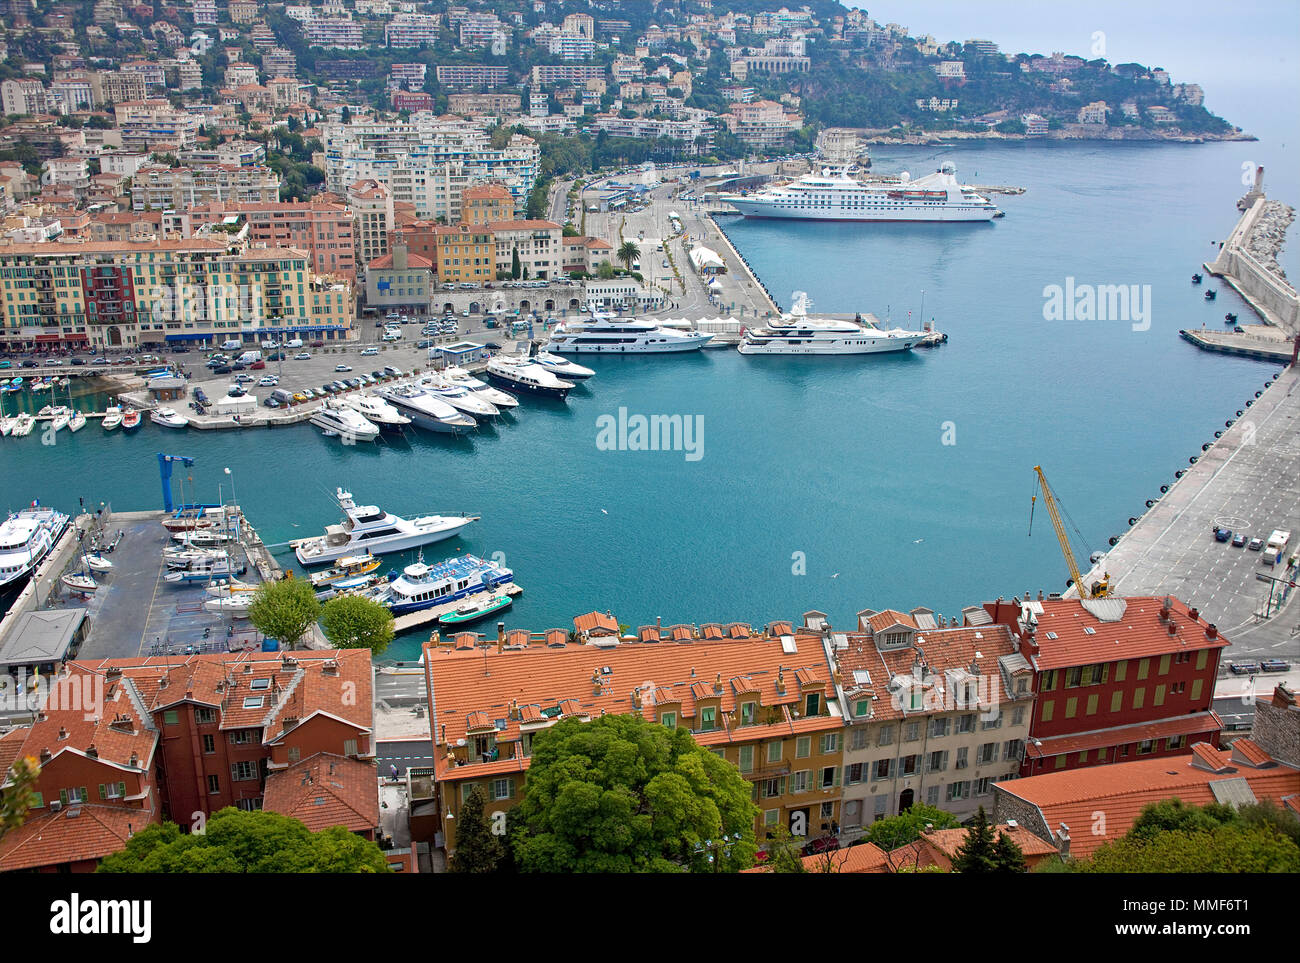 Hafen von Nizza Côte d'Azur, Alpes-Maritimes, Suedfrankreich, Frankreich | Porto di Nizza Côte d'Azur, Alpes-Maritimes, Sud Francia France Foto Stock